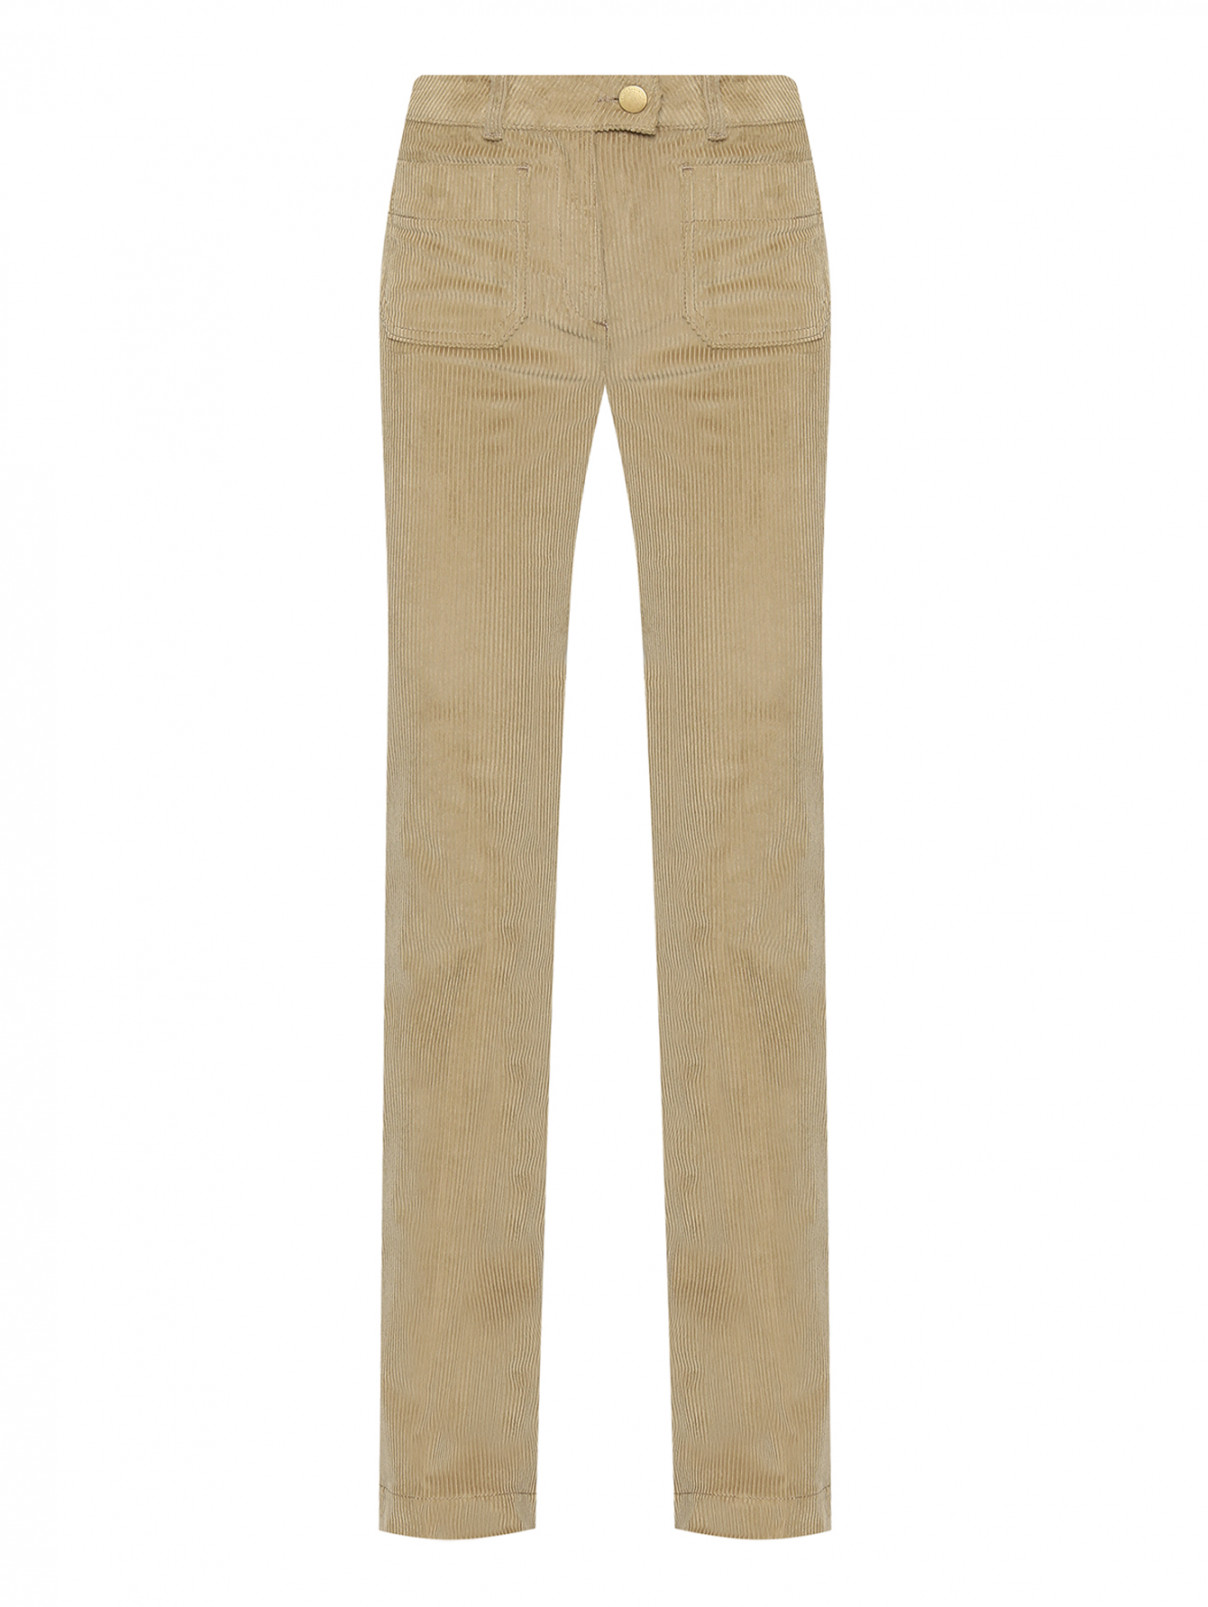 Вельветовые брюки с накладными карманами Luisa Spagnoli  –  Общий вид  – Цвет:  Бежевый